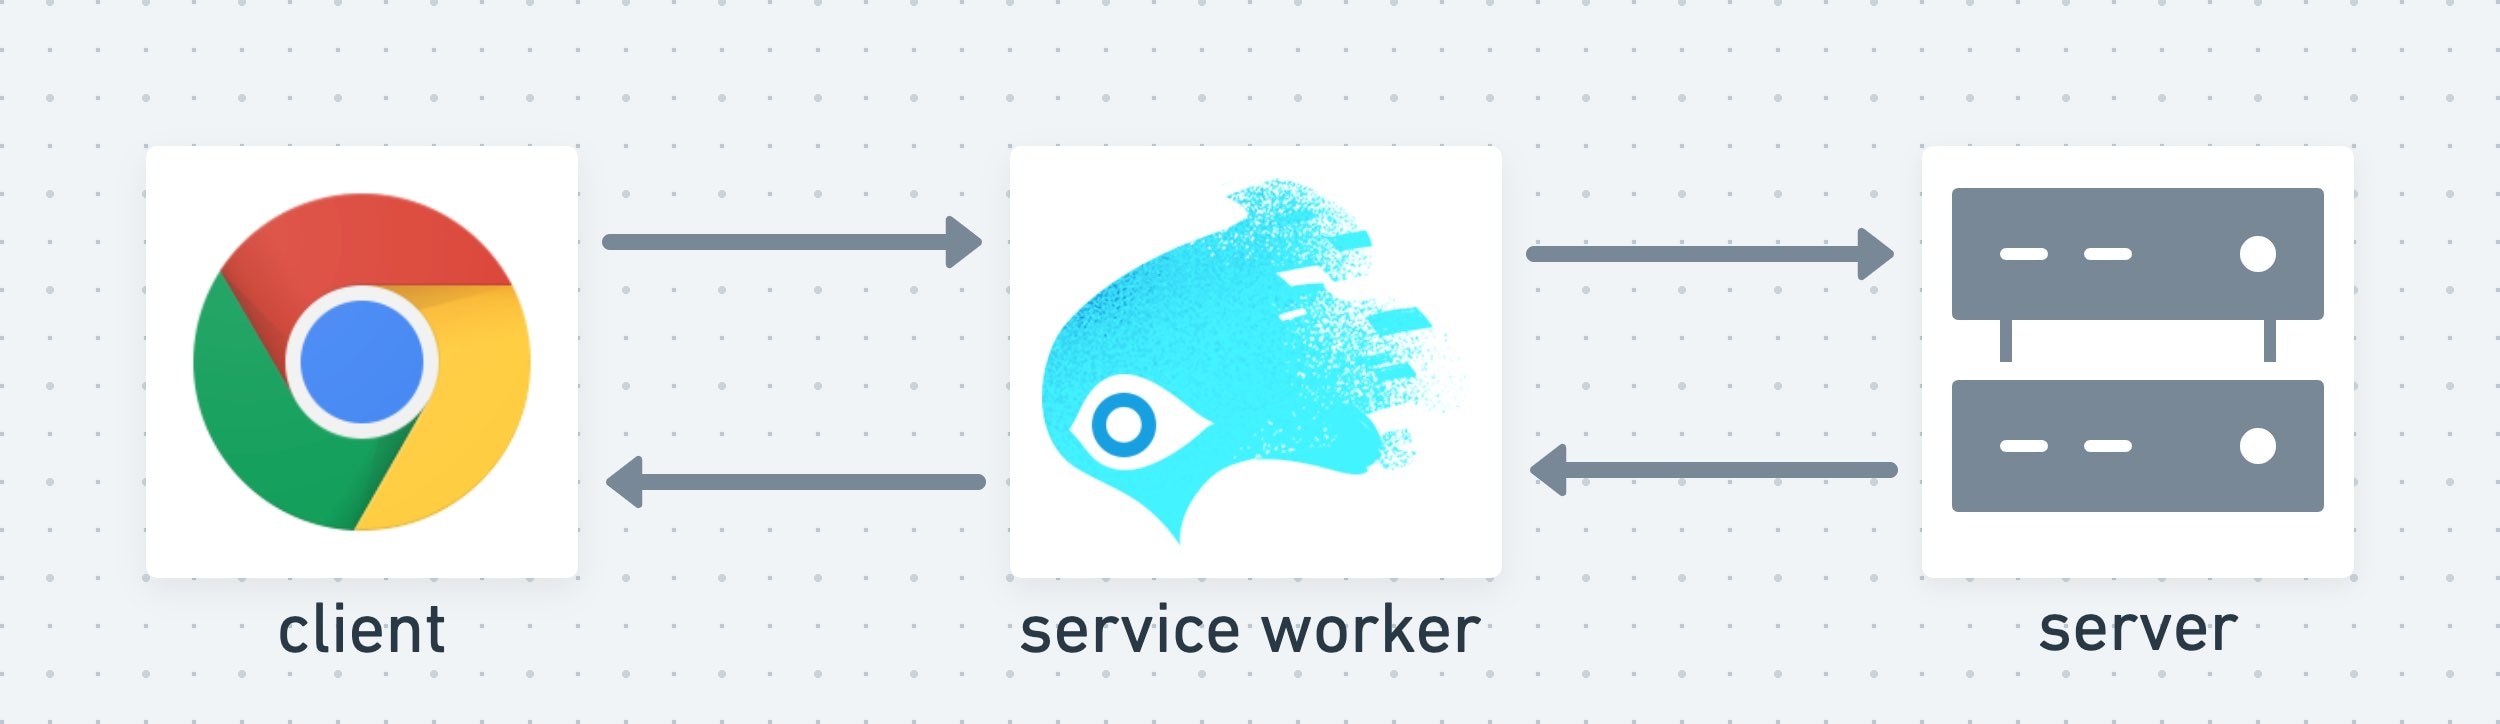 Um service worker atua como uma camada intermediária entre o cliente e o servidor